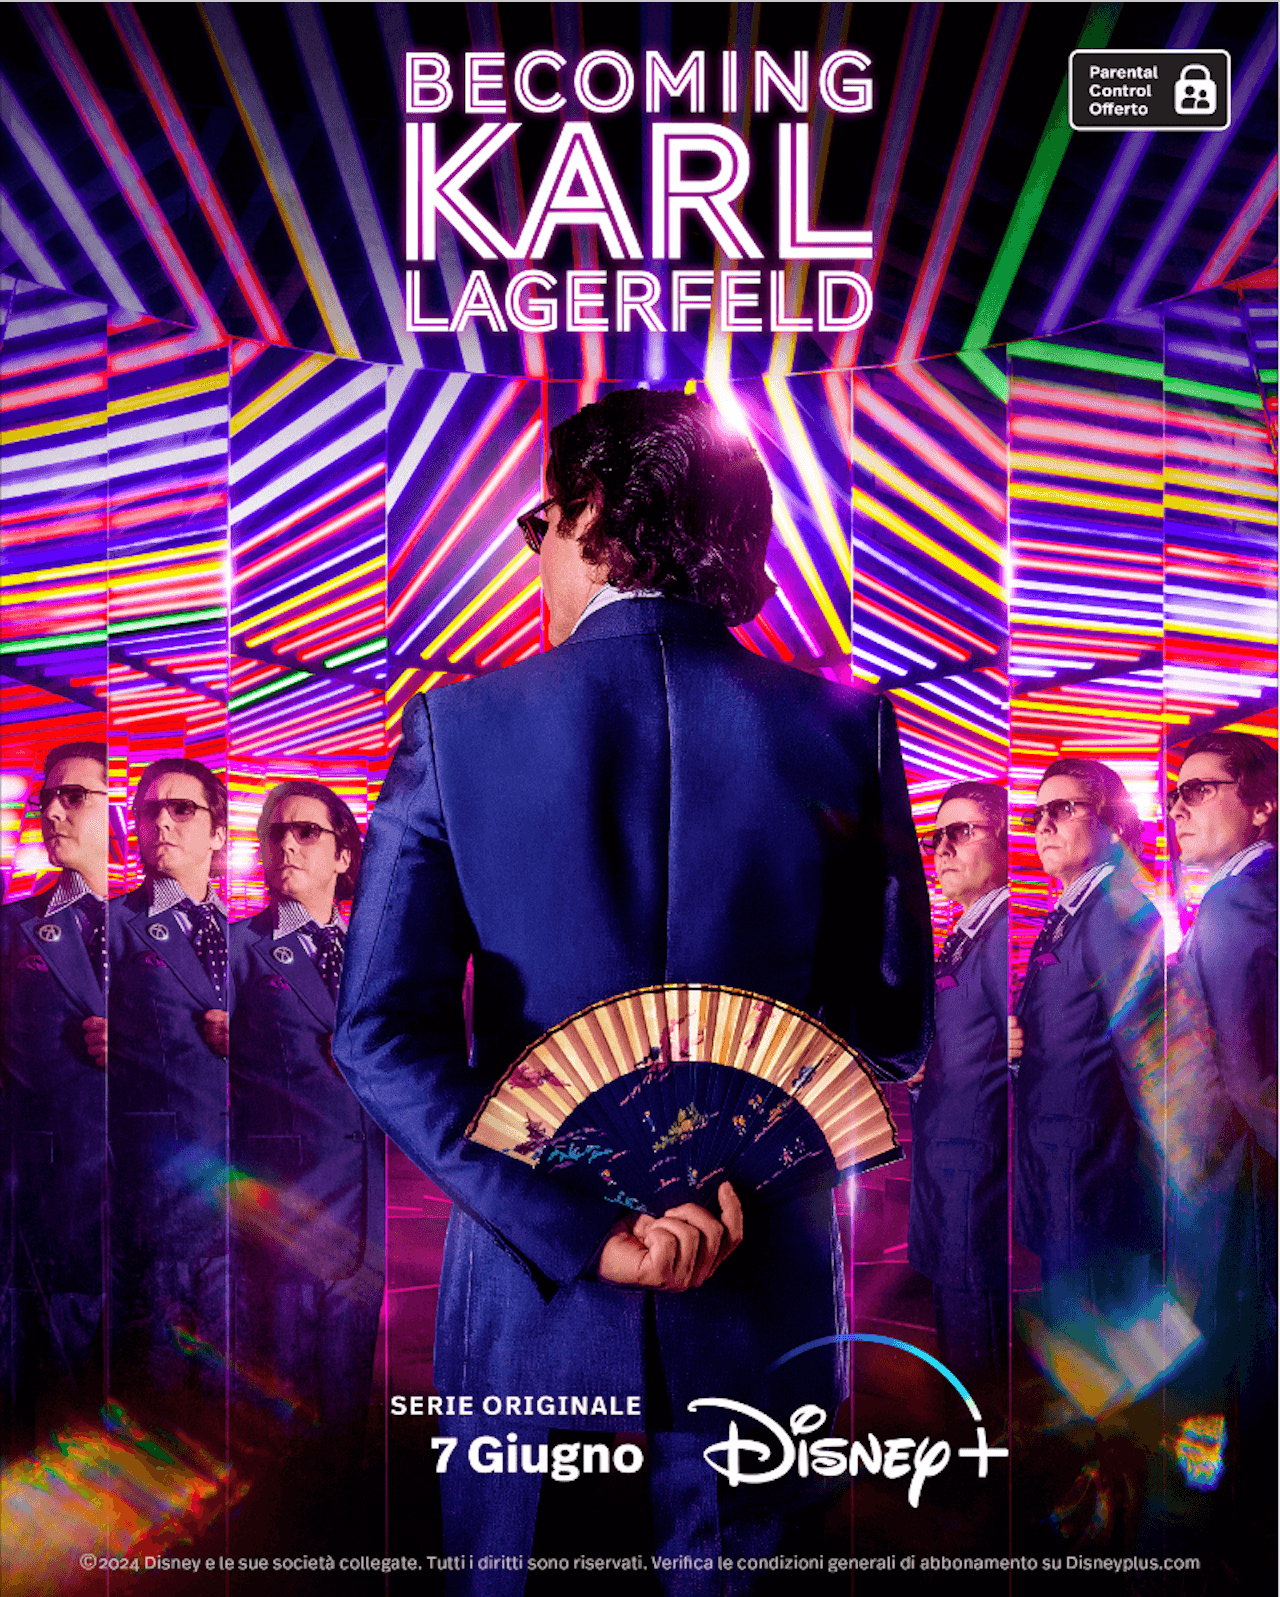 Becoming Karl Lagerfeld, il primo trailer della serie con Daniel Brühl nei panni dello stilista - Becoming Karl Lagerfeld - Gay.it